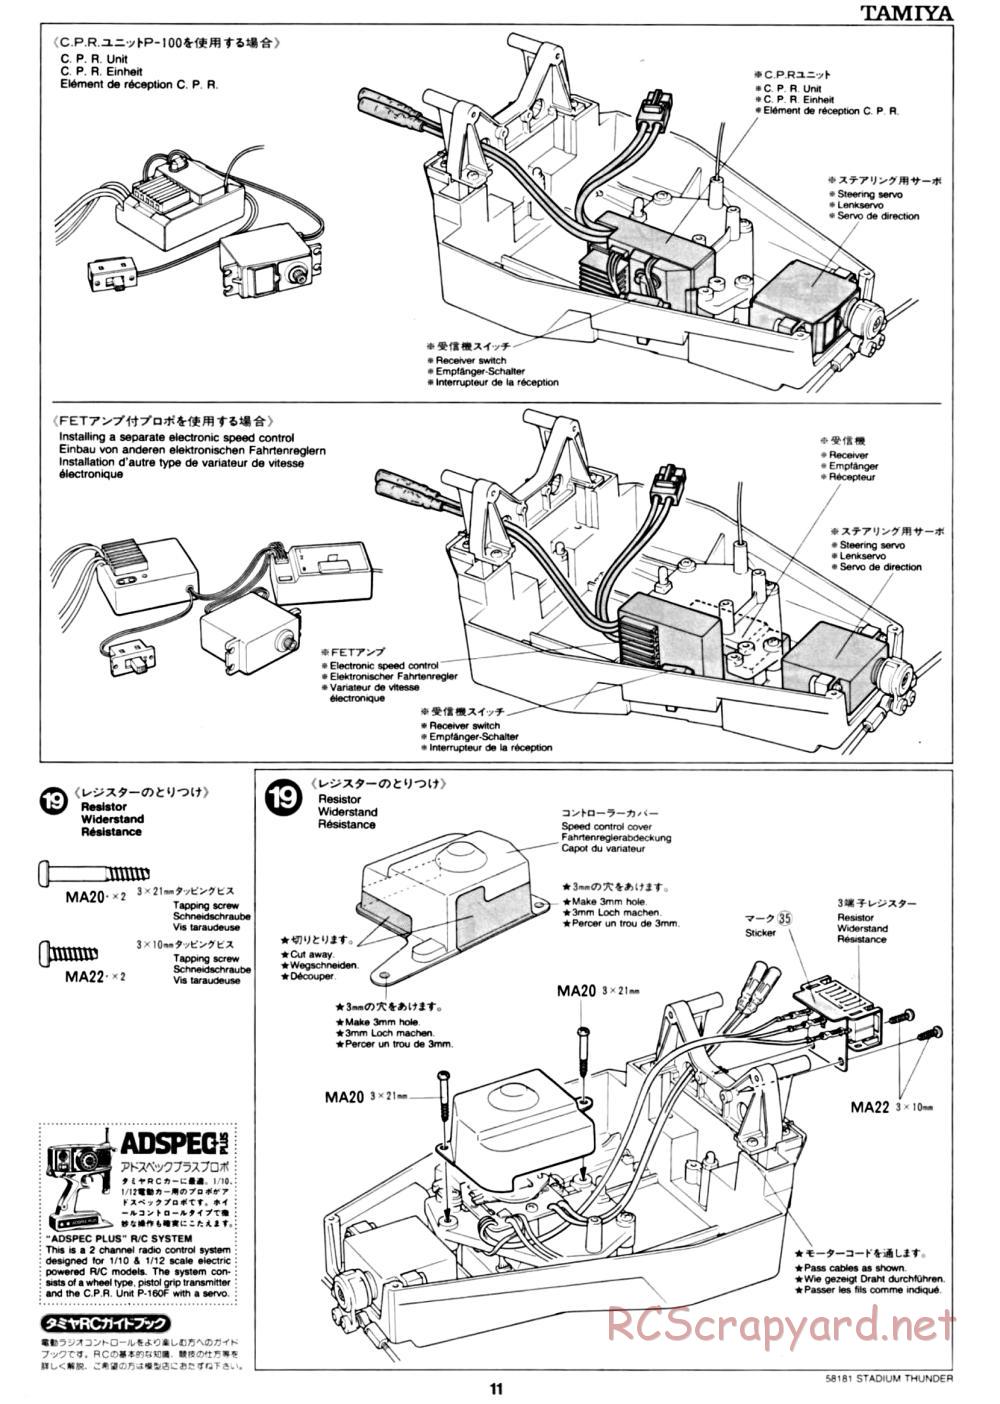 Tamiya - Stadium Thunder Chassis - Manual - Page 11